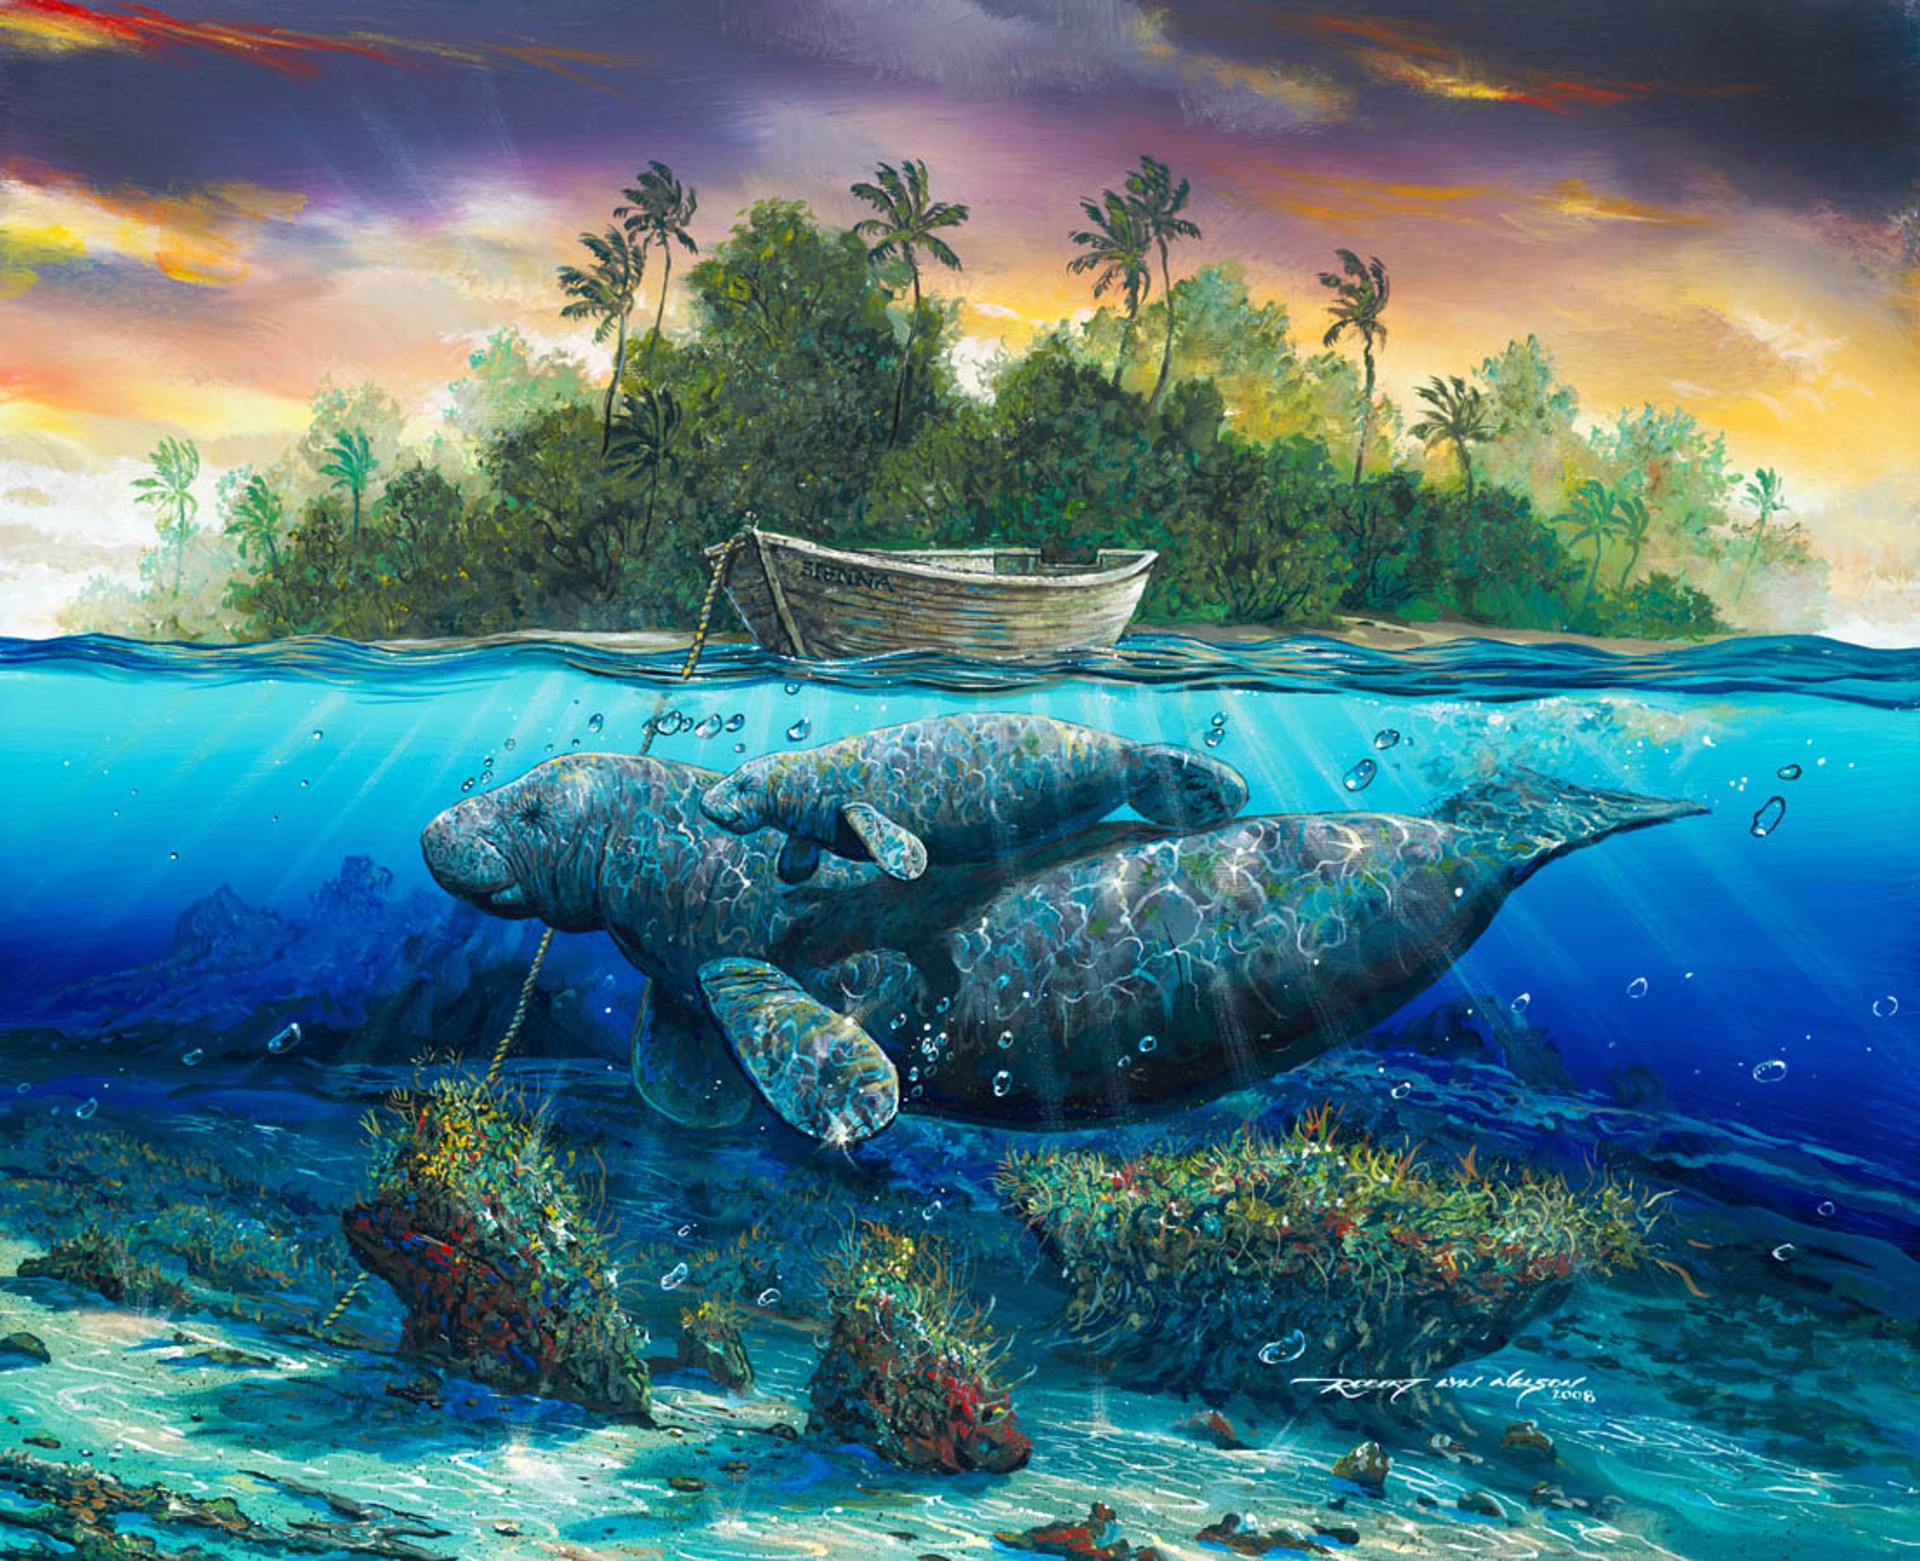 Key West Sirenia by Robert Lyn Nelson